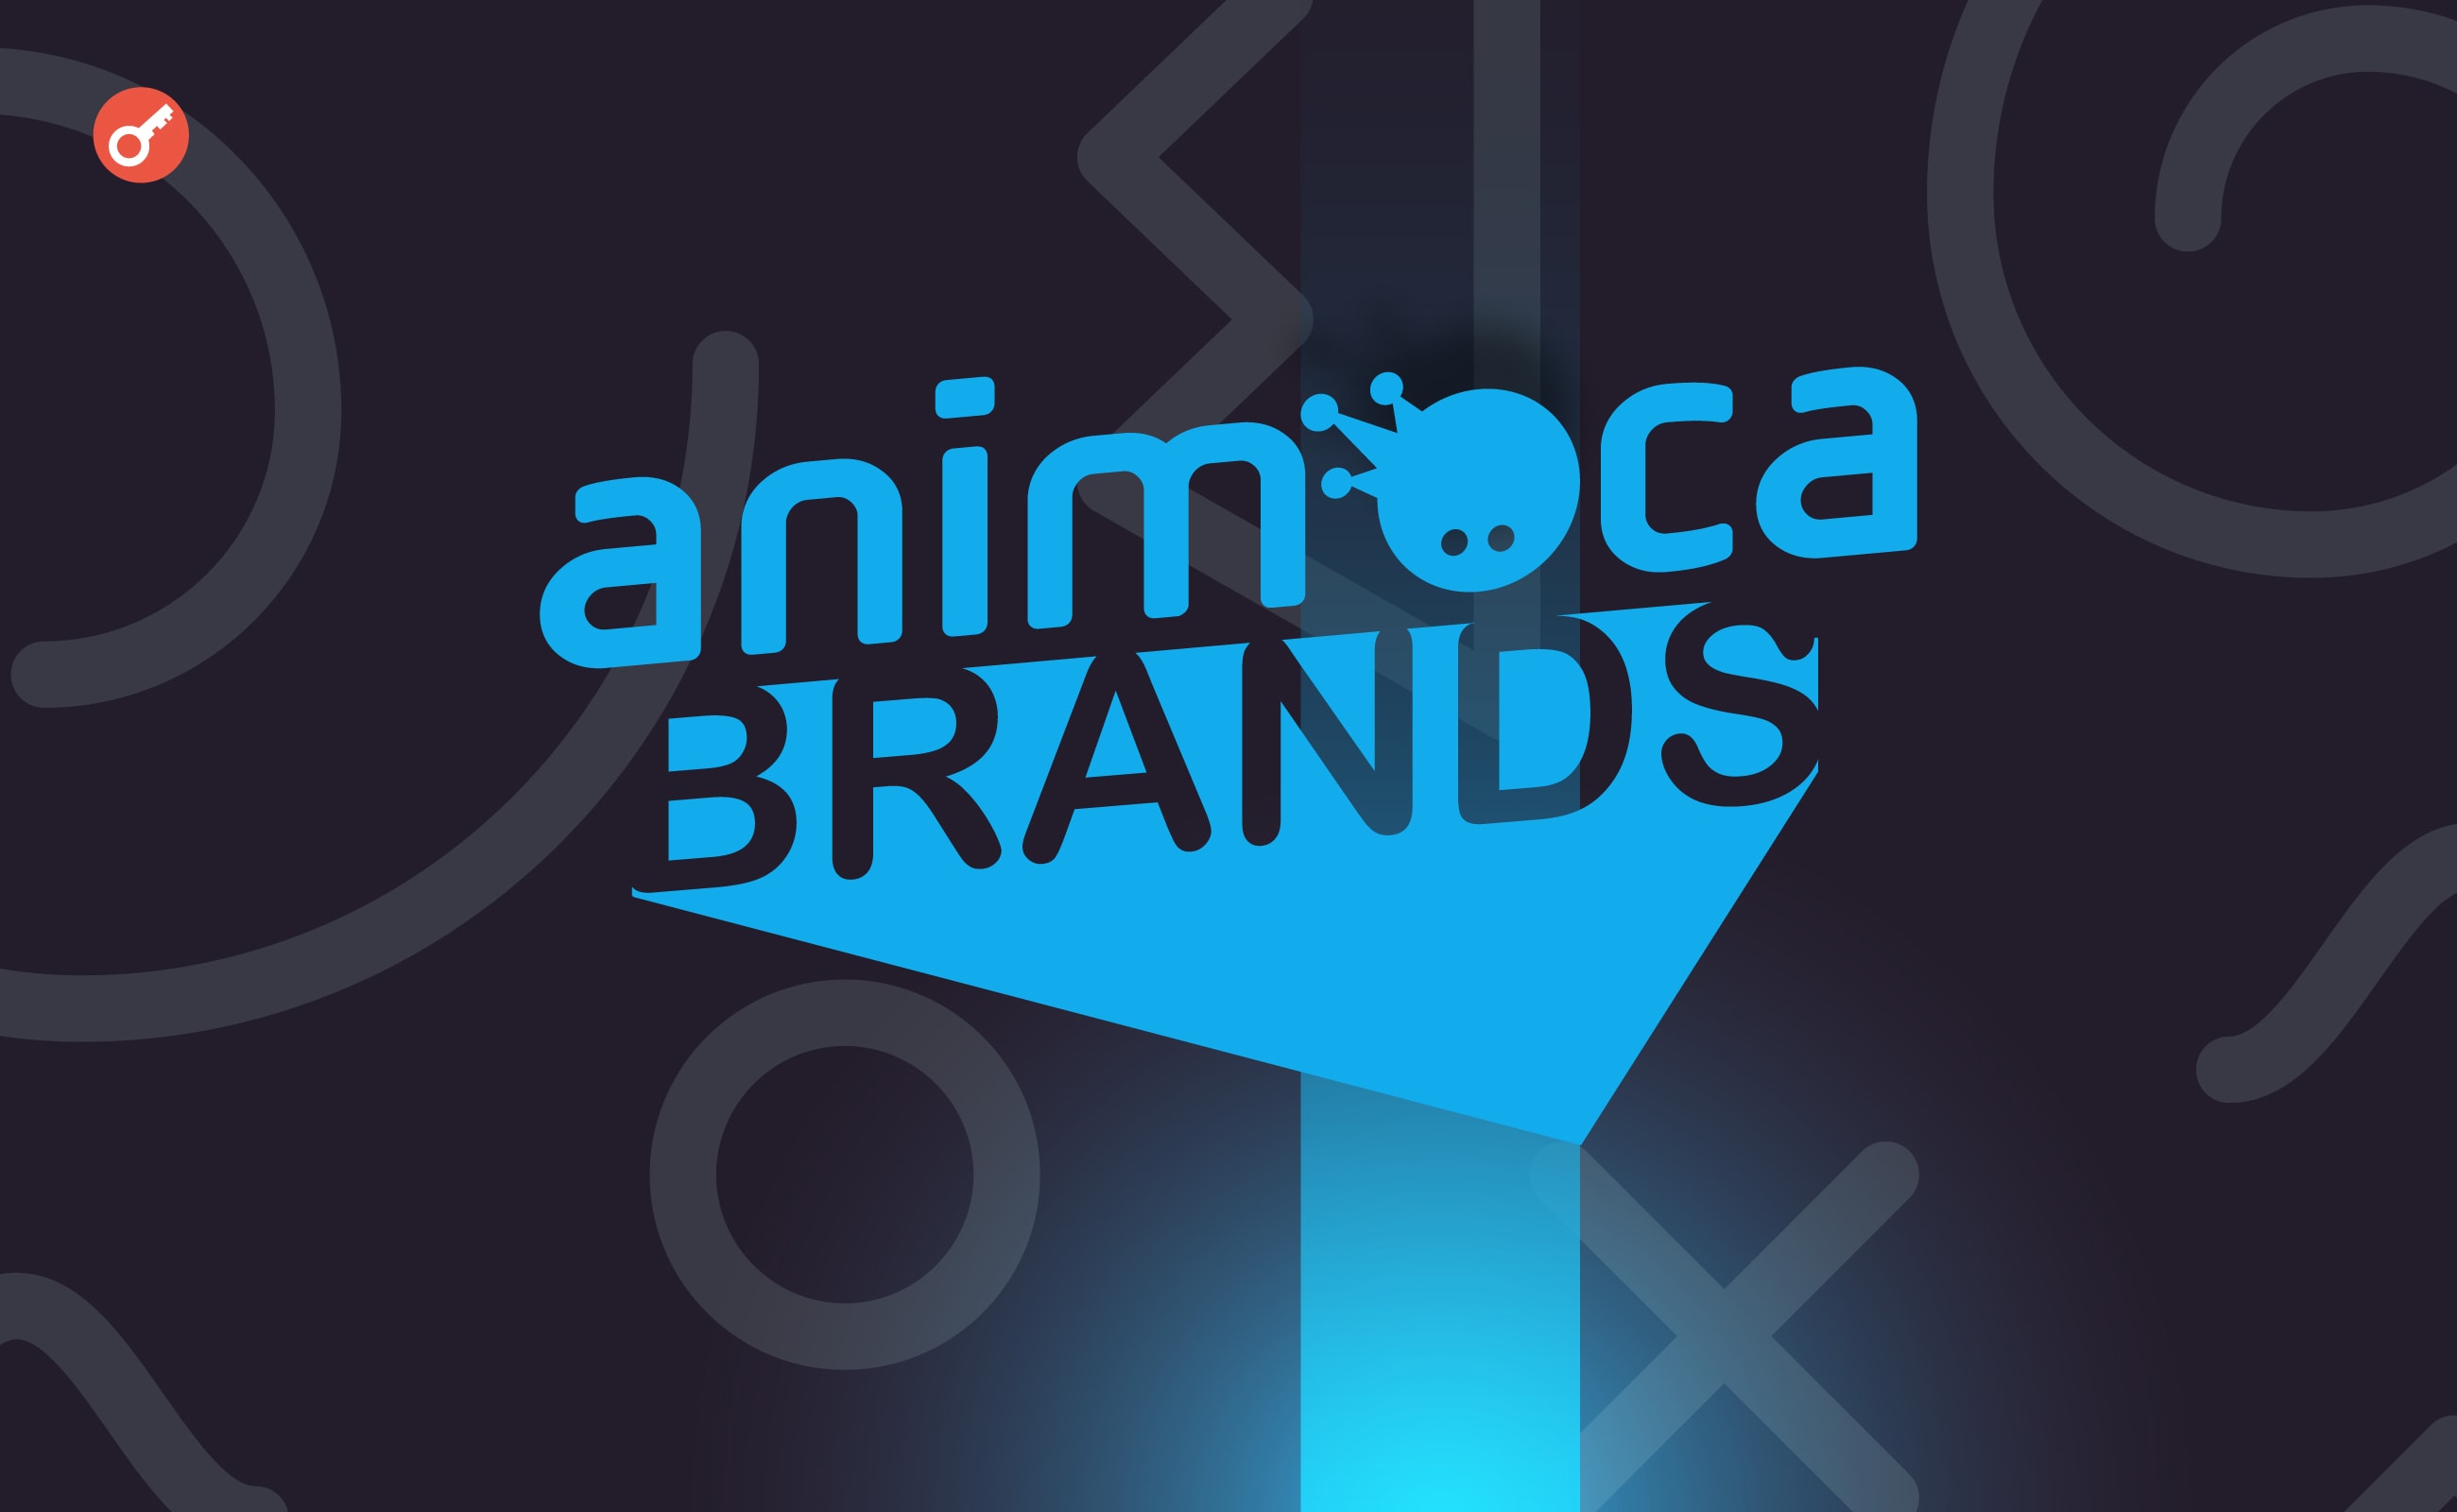 Animoca Brands інвестувала в екосистему TON і стала найбільшим валідатором блокчейну. Головний колаж новини.